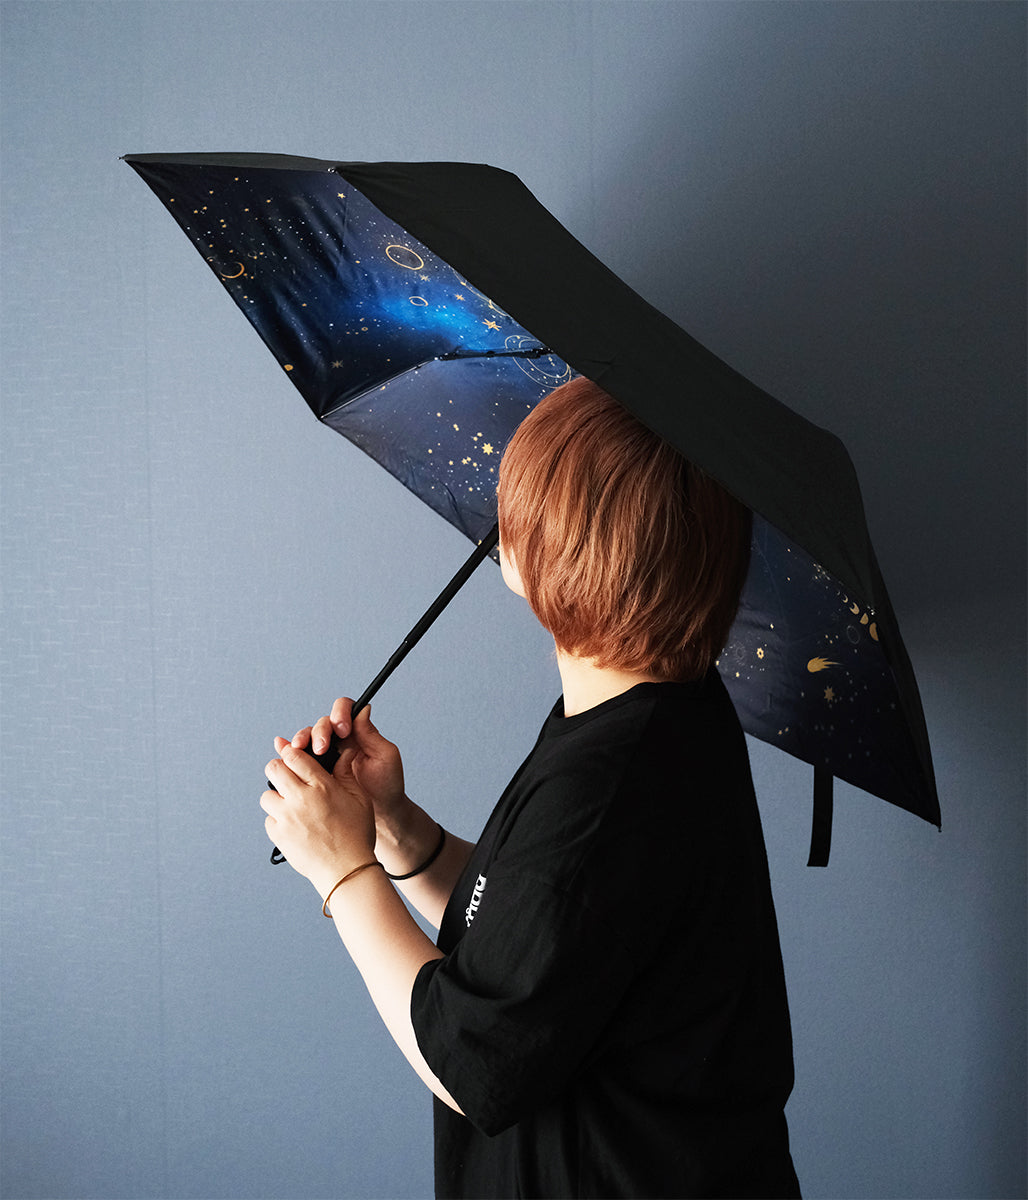 傘 折りたたみ傘 日傘 晴雨兼用 折り畳み傘UVカット 内側